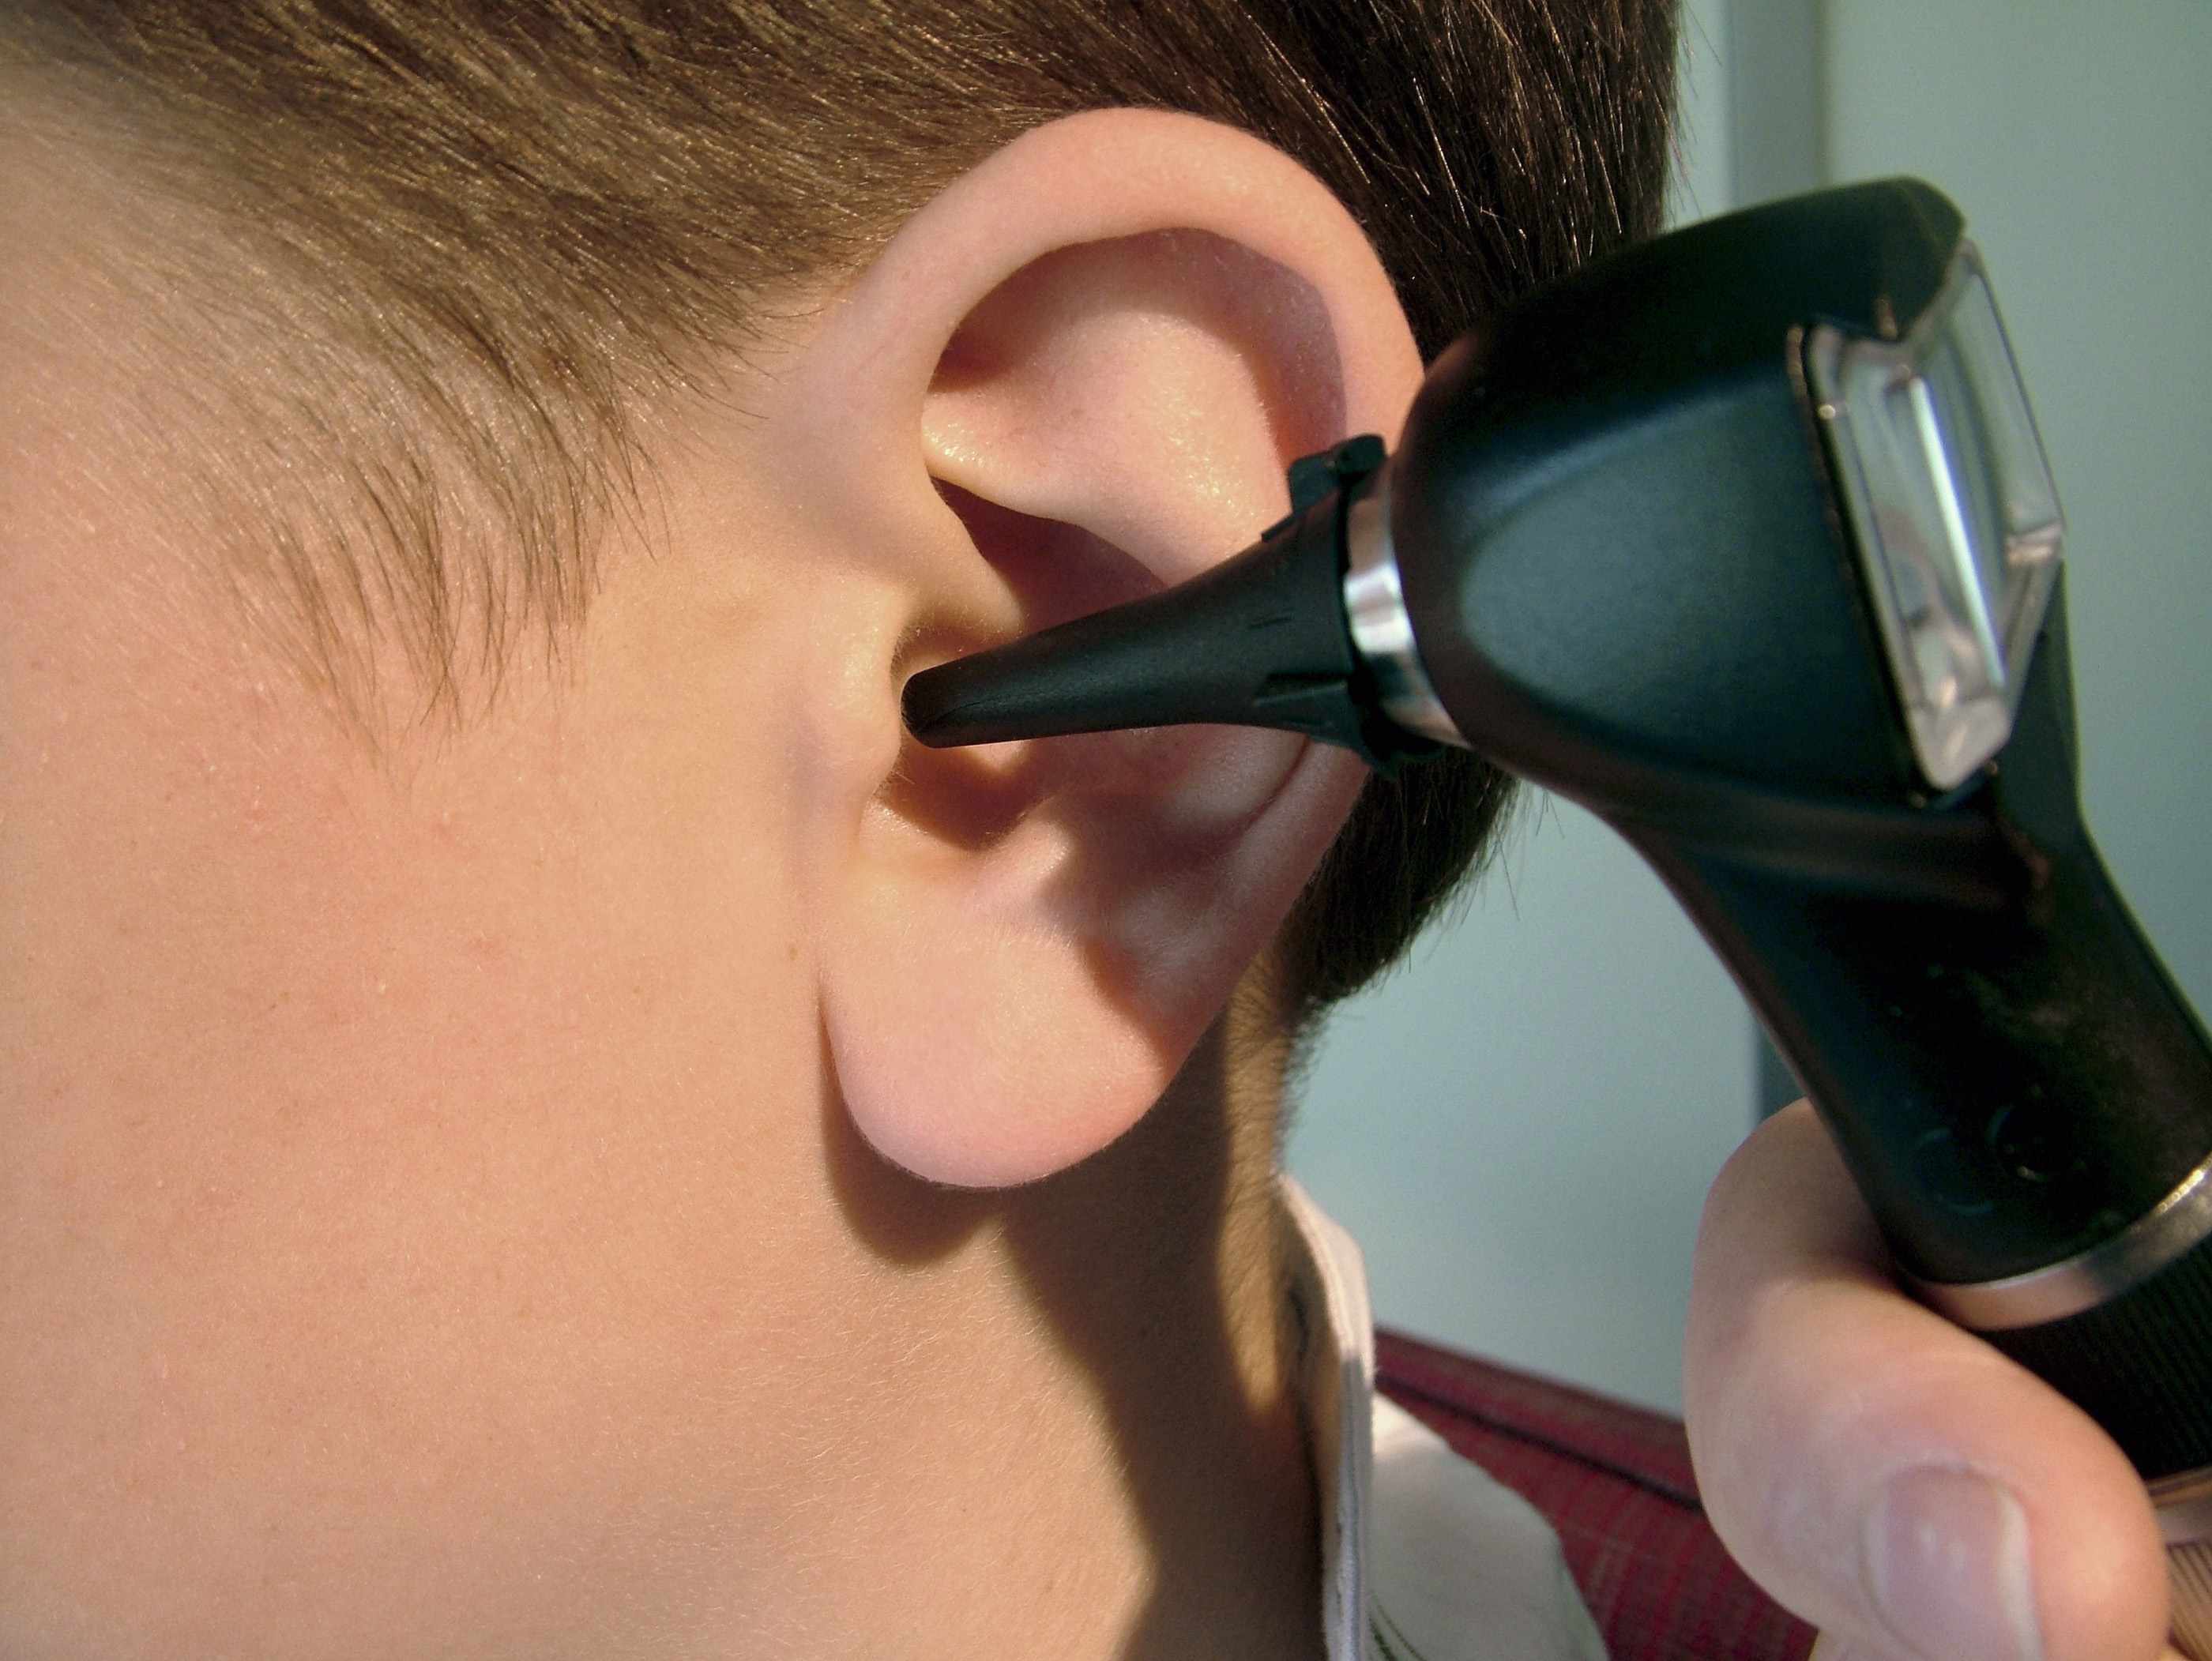 Воспаление уха чем лечить в домашних условиях